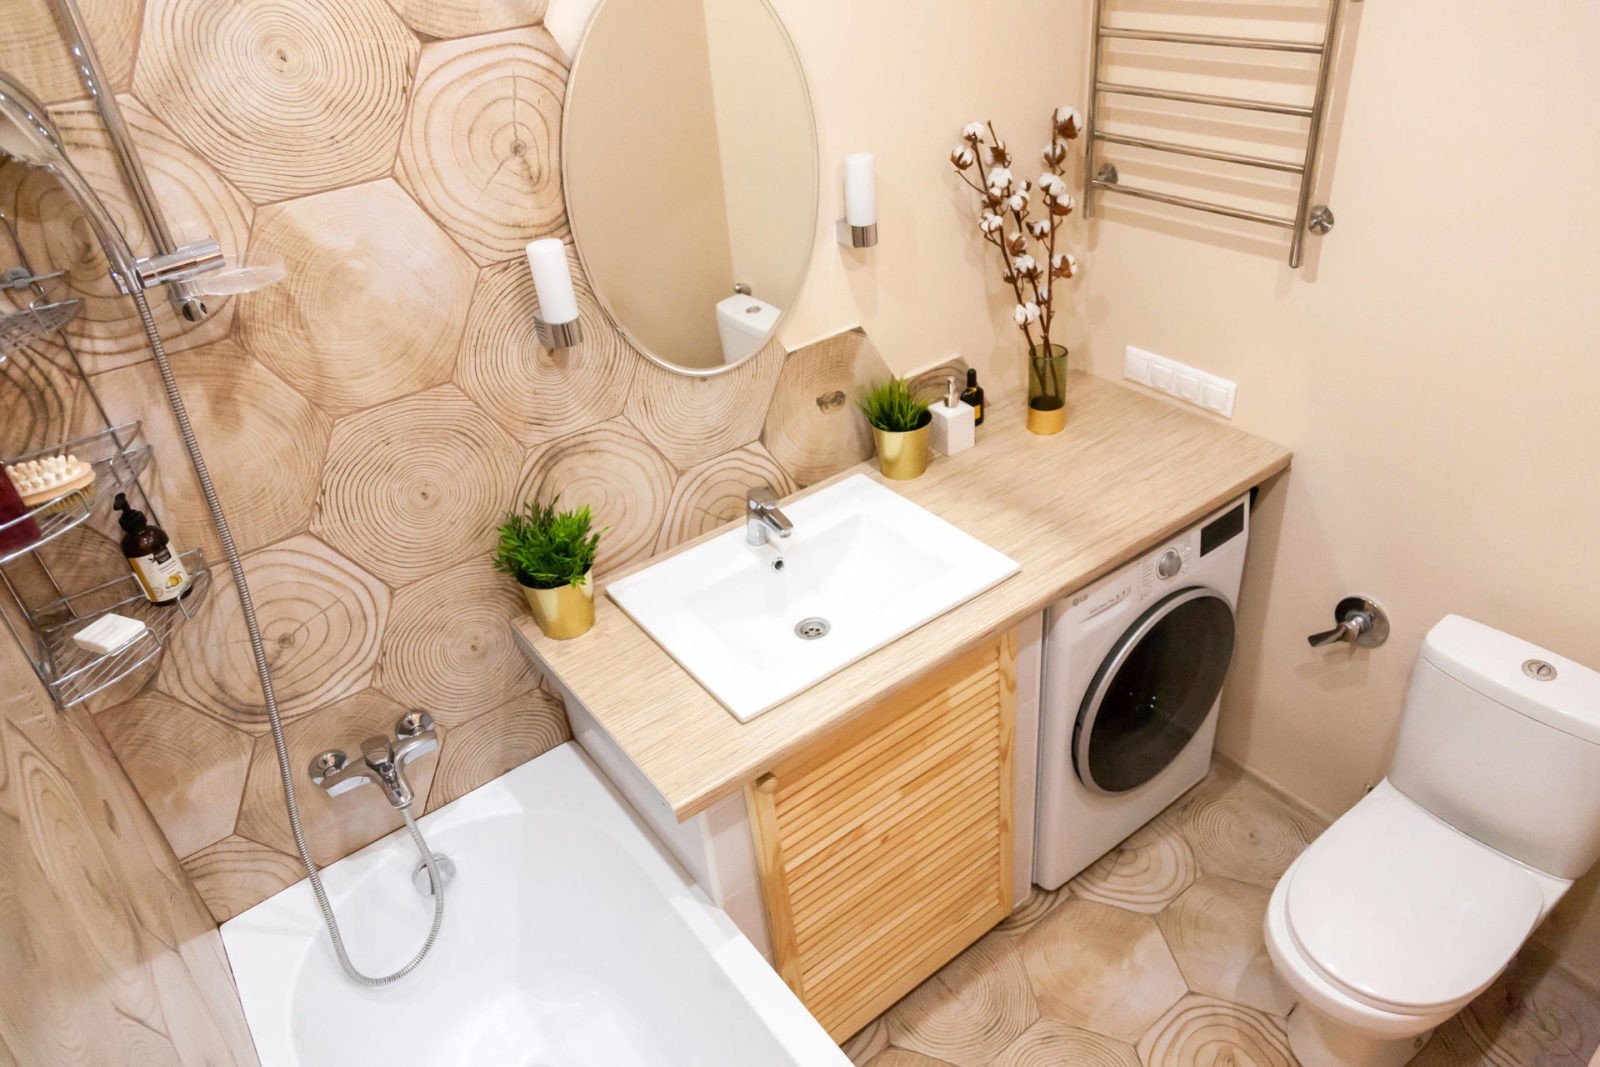 Ванная комната дизайн фото со стиральной машиной фото